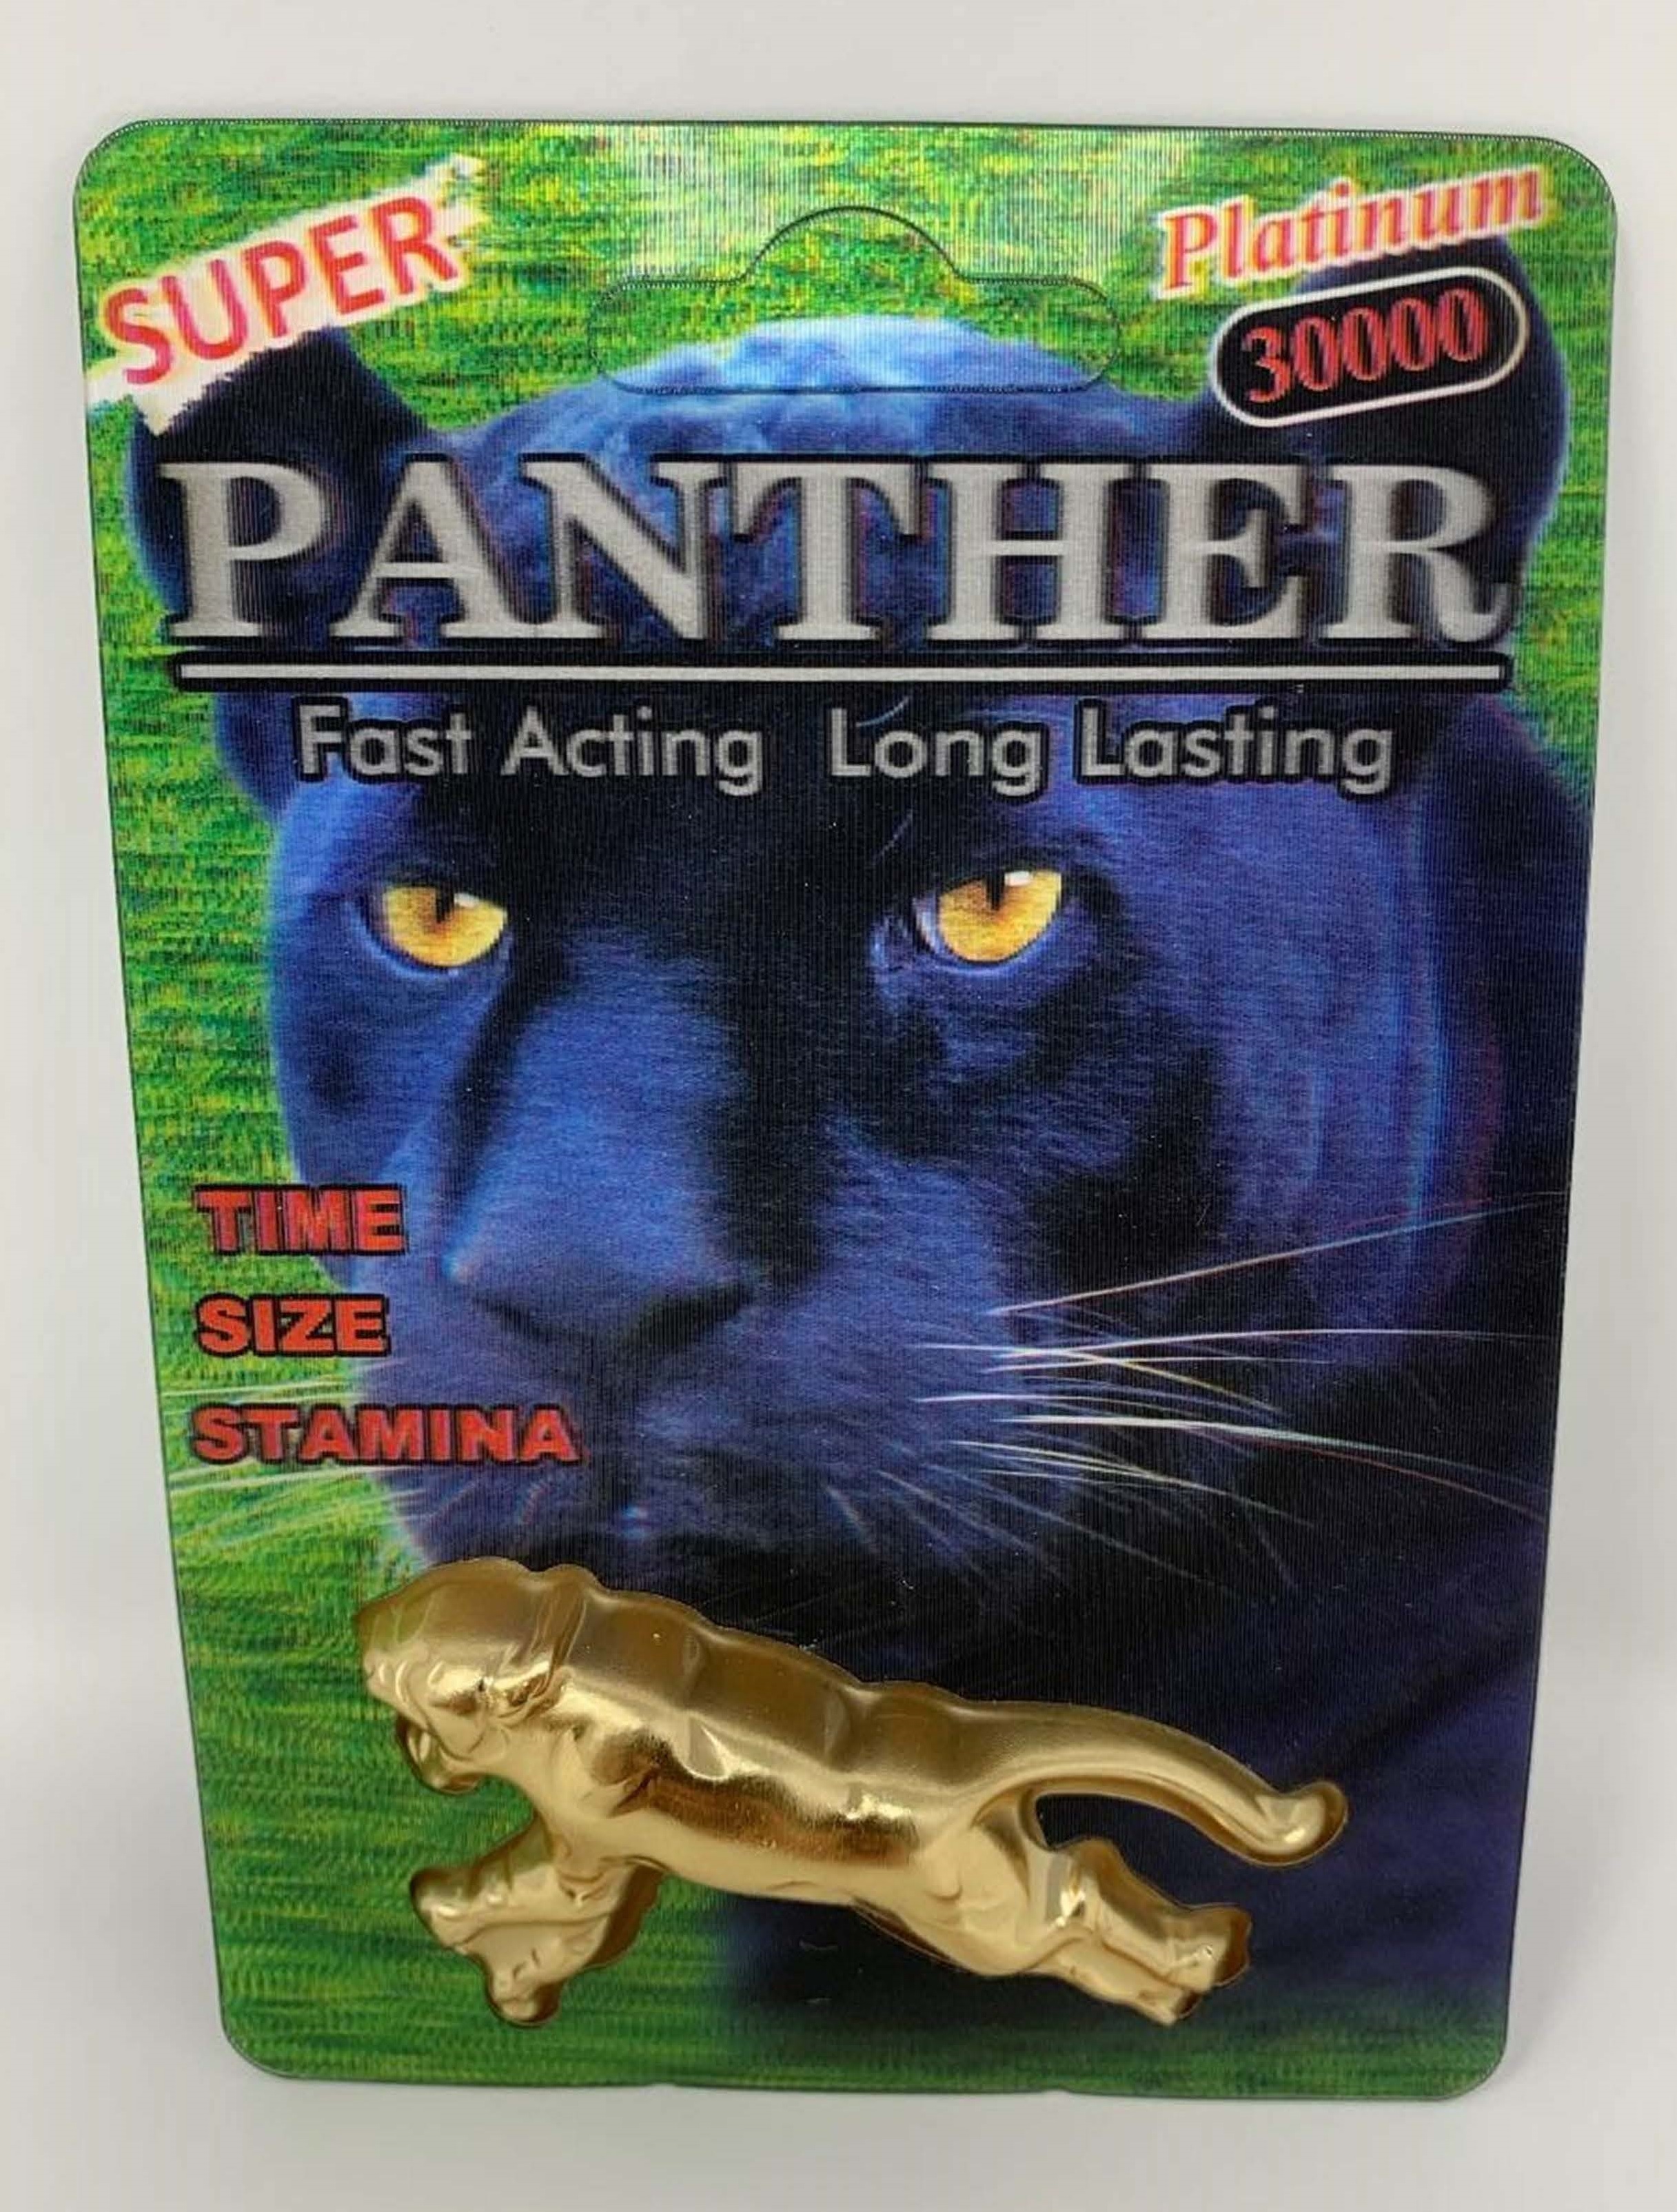 Billede af det ulovlige produkt: Panther Platinum 30000